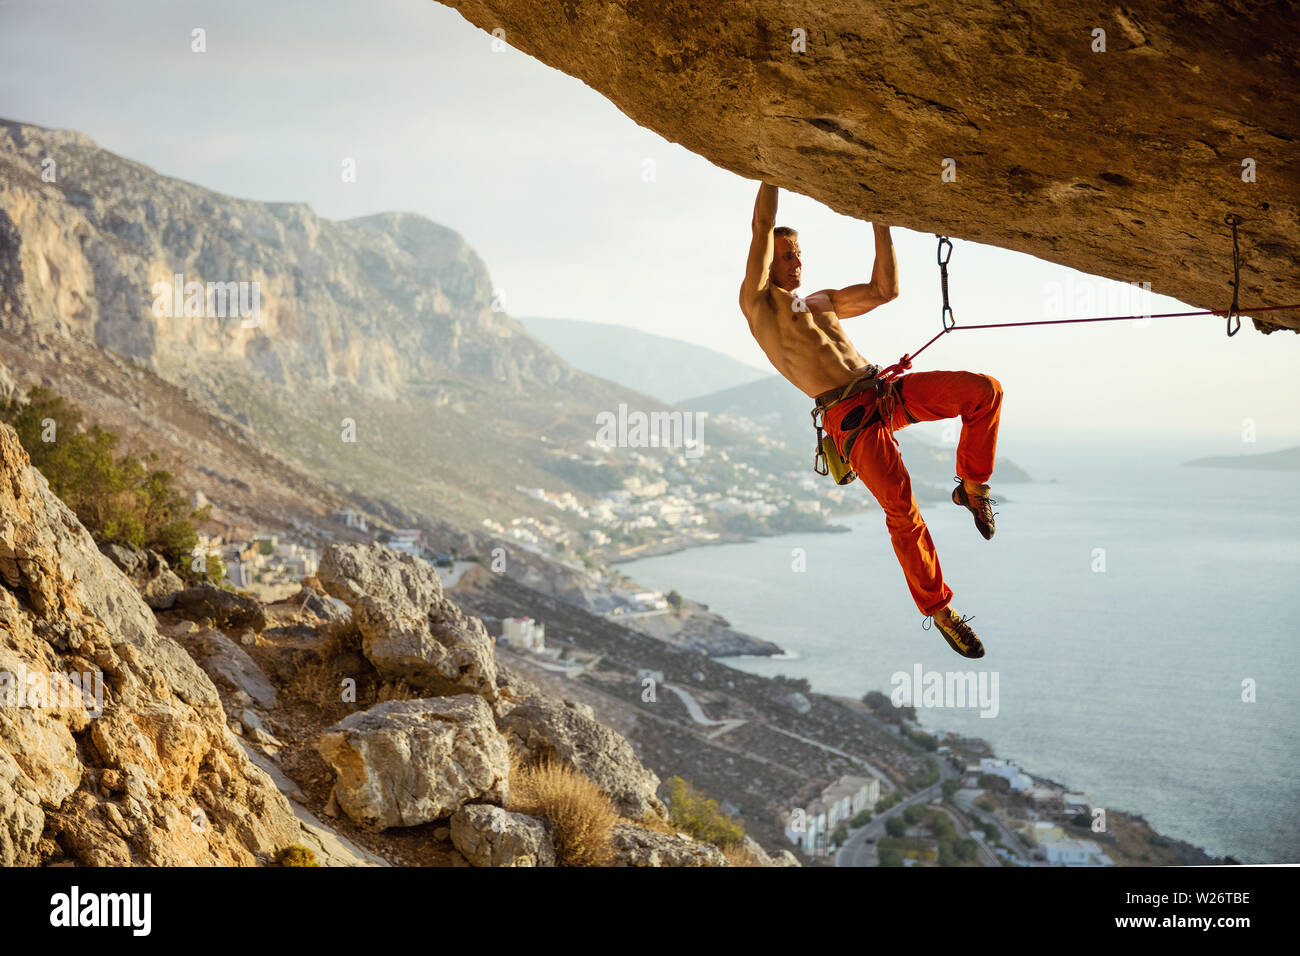 Giovane uomo arrampicata percorso impegnativo in grotta contro la bella vista della costa Foto Stock